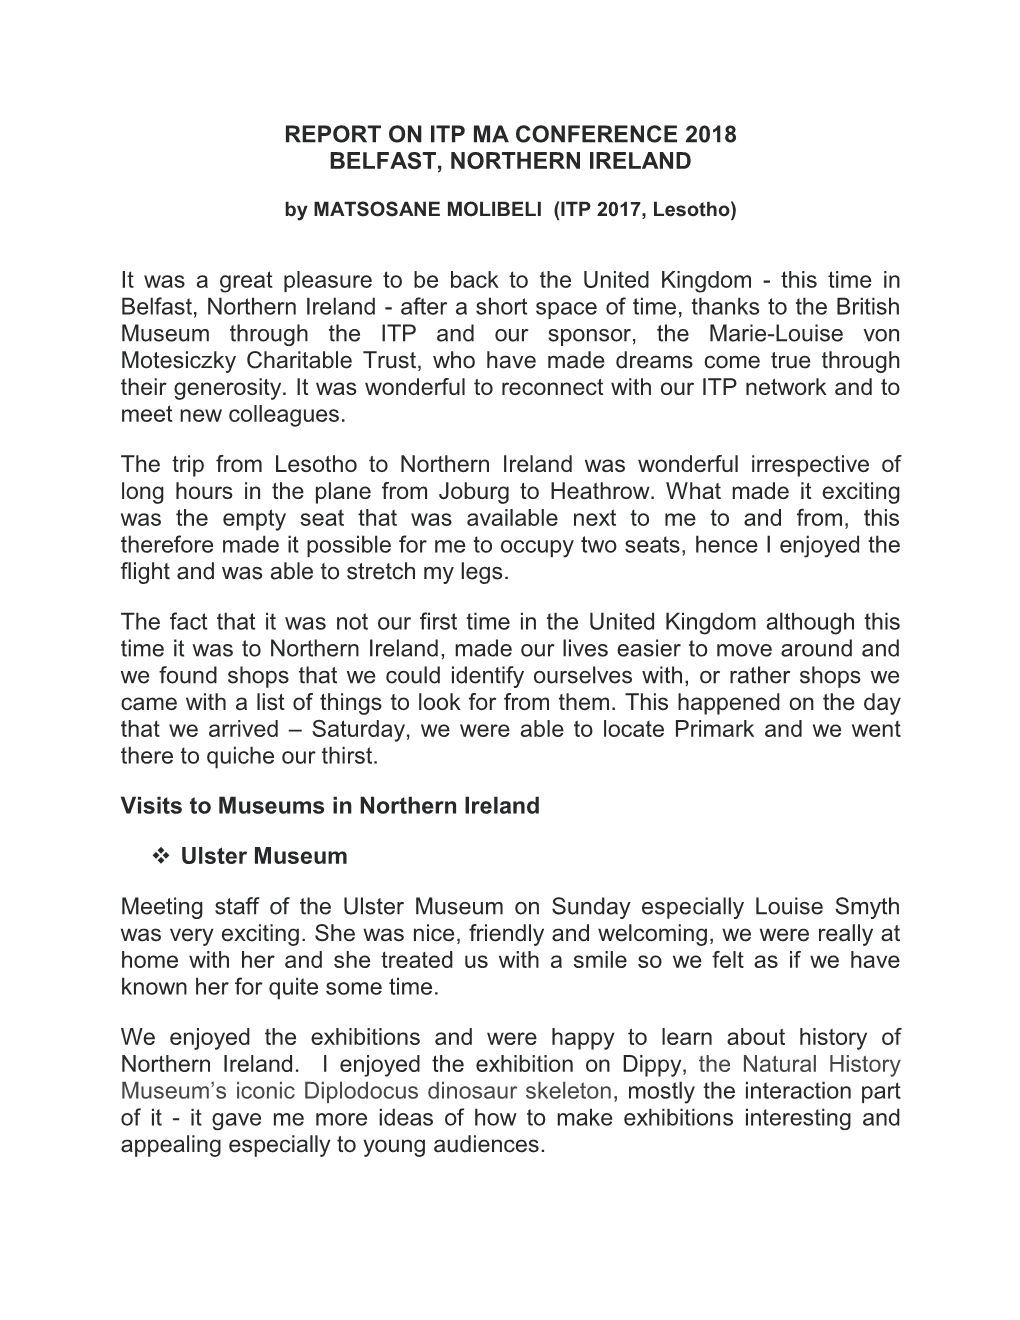 Matsosane Molibeli – MA Belfast Report